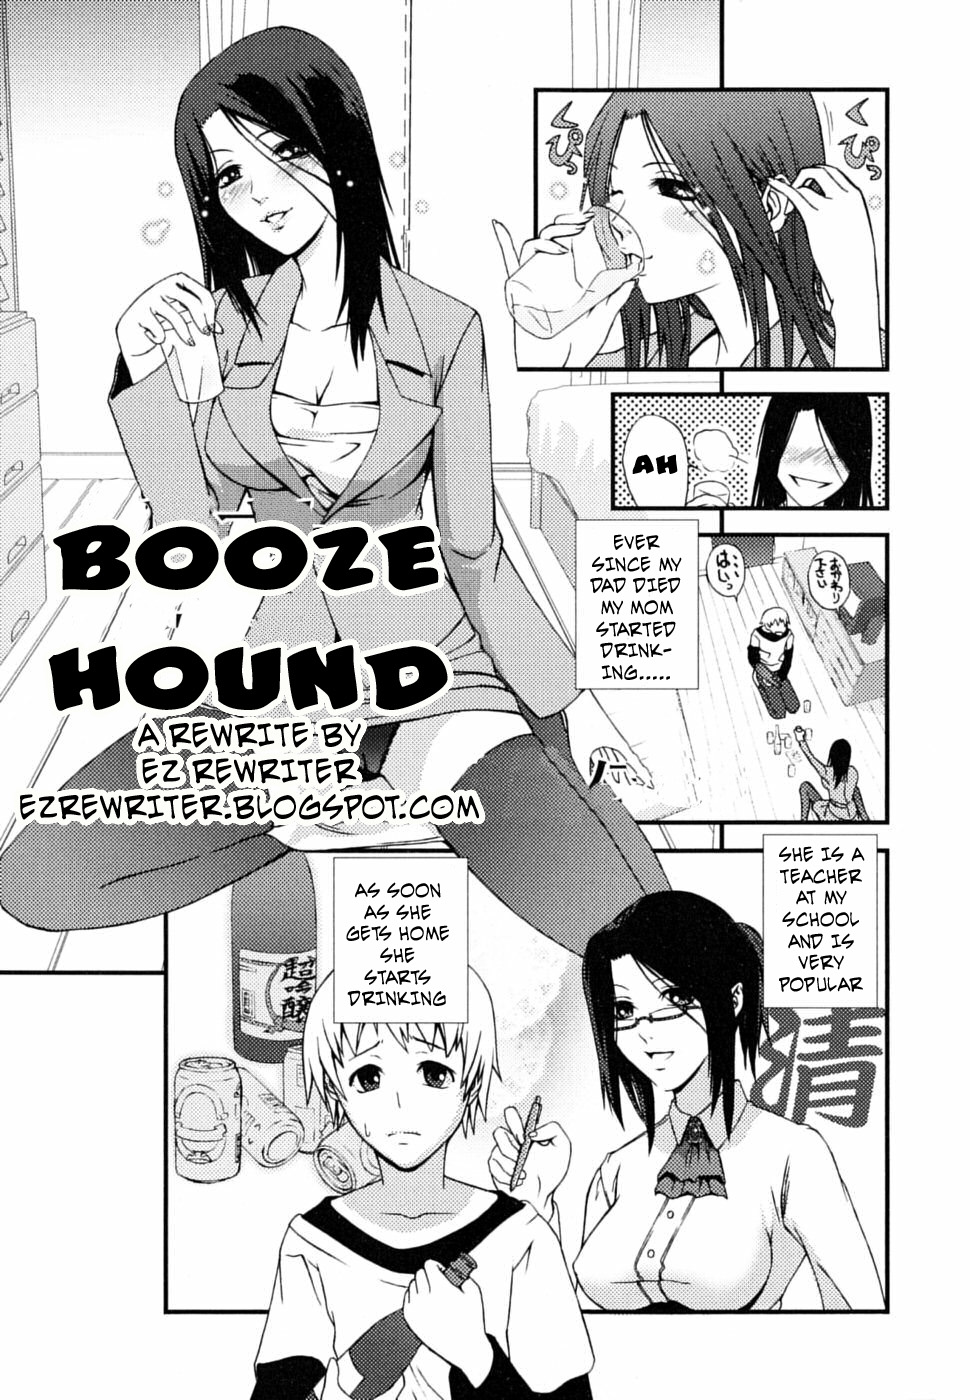 Booze Hound (rewrite by ezrewriter) 